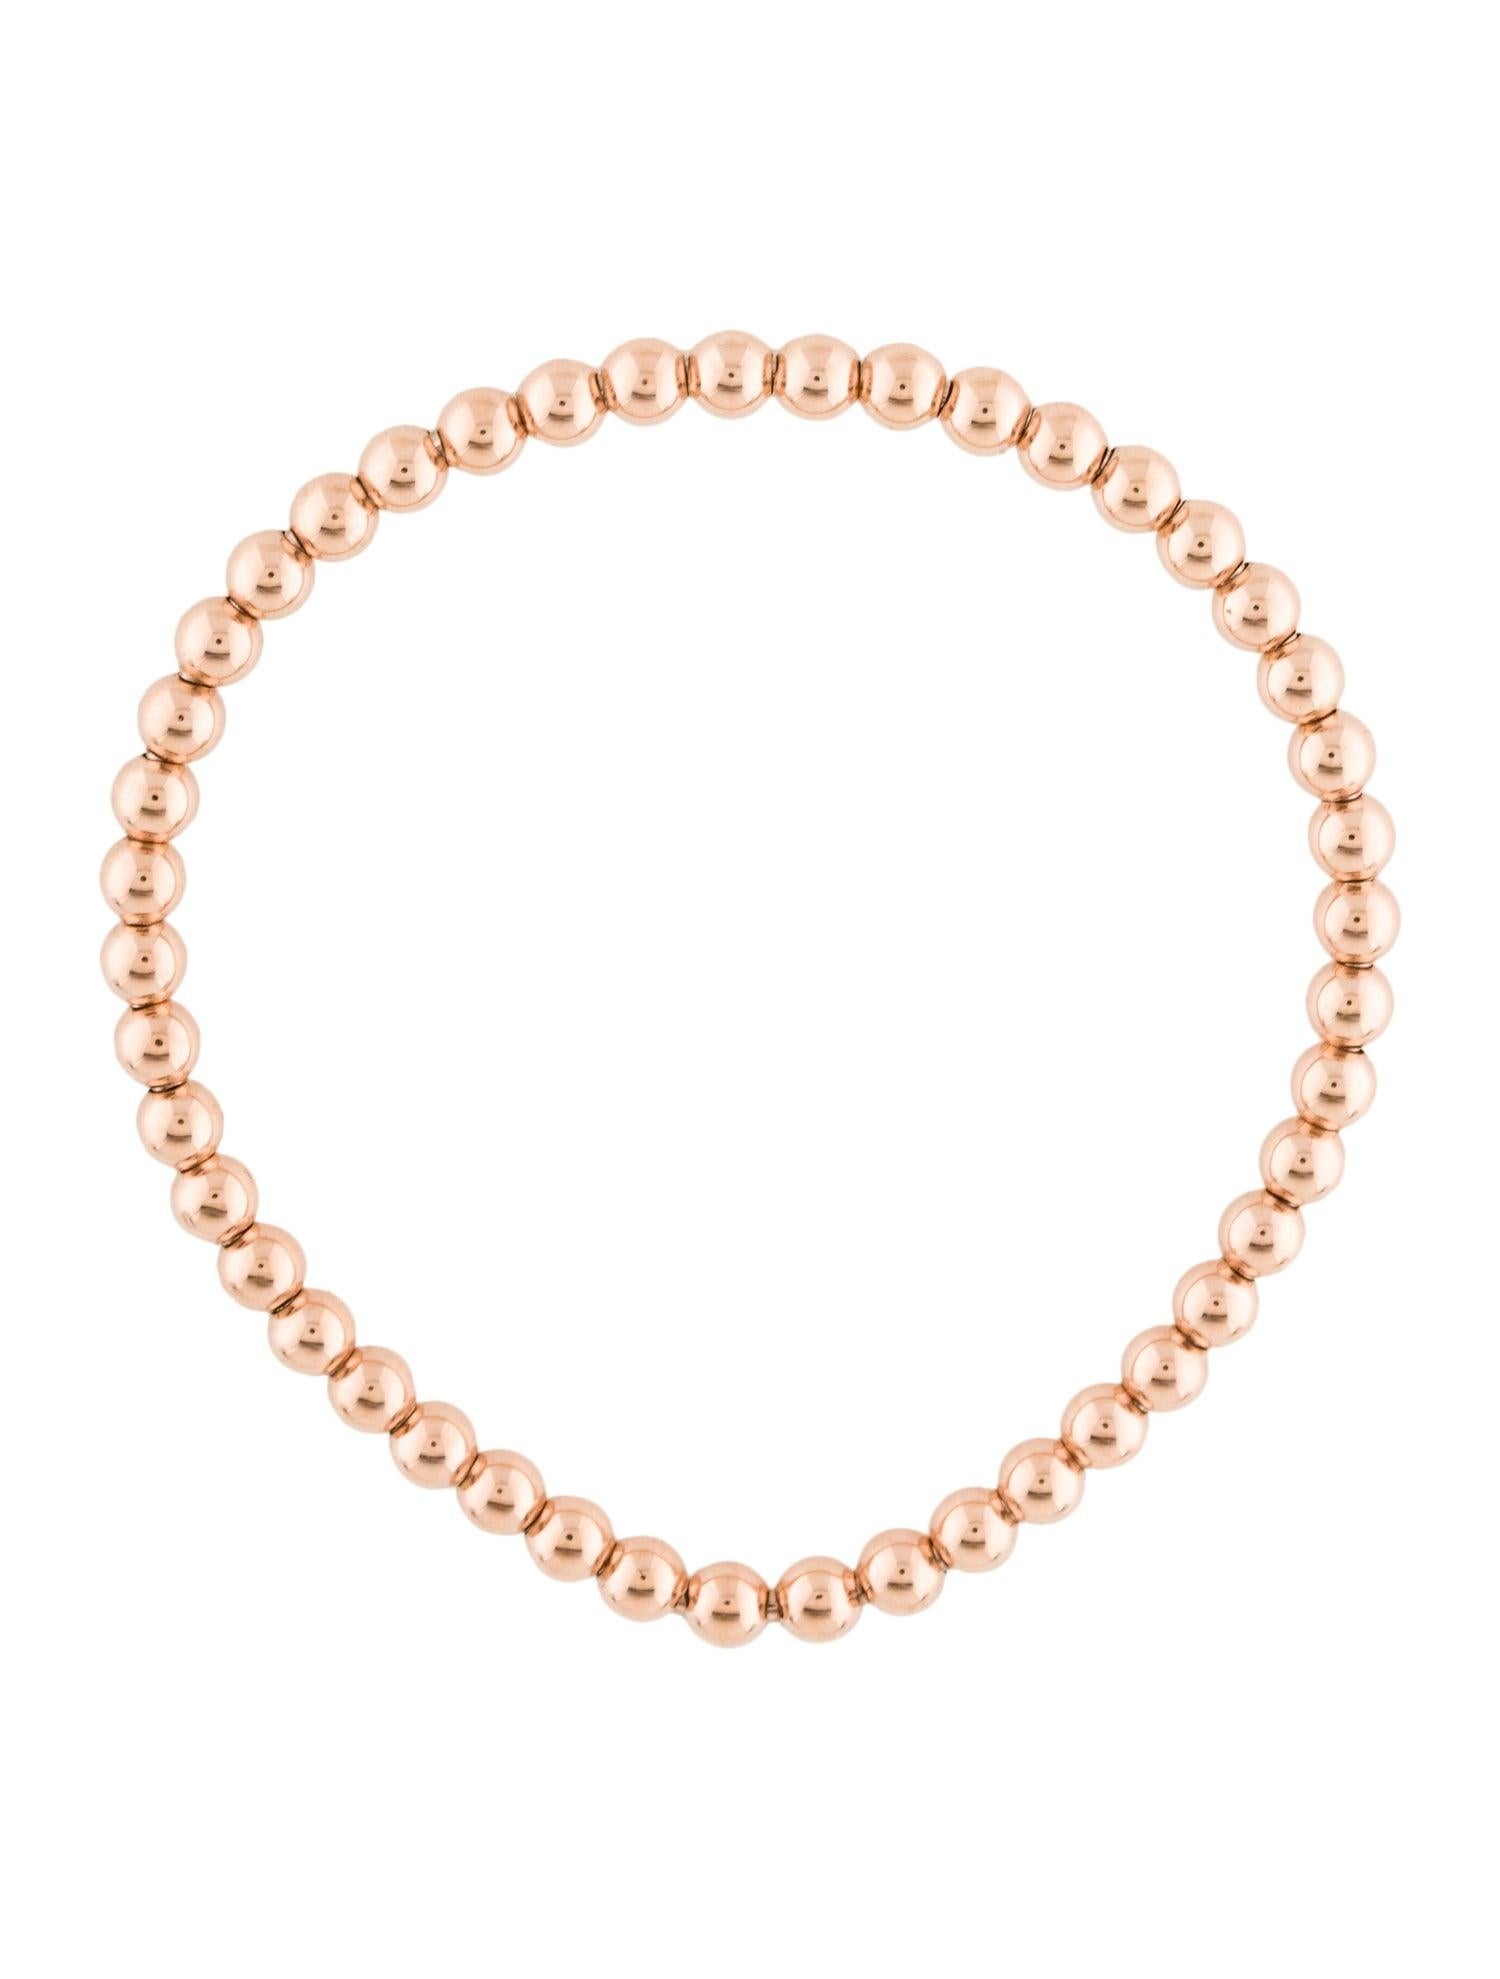 white gold bead bracelet